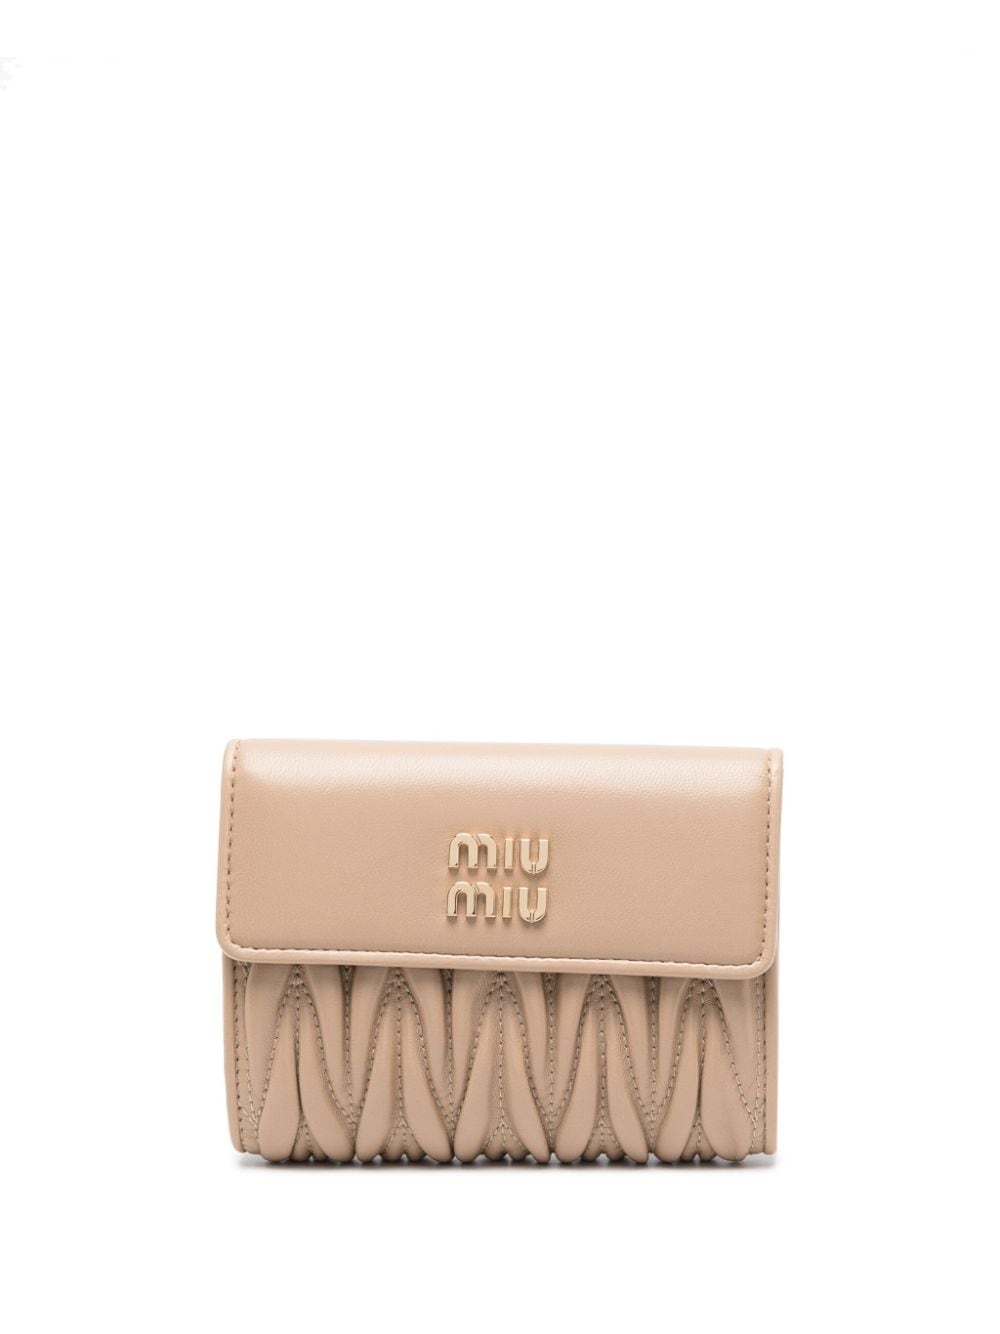 Miu Miu Portemonnaie mit Matelasse-Optik - Nude von Miu Miu